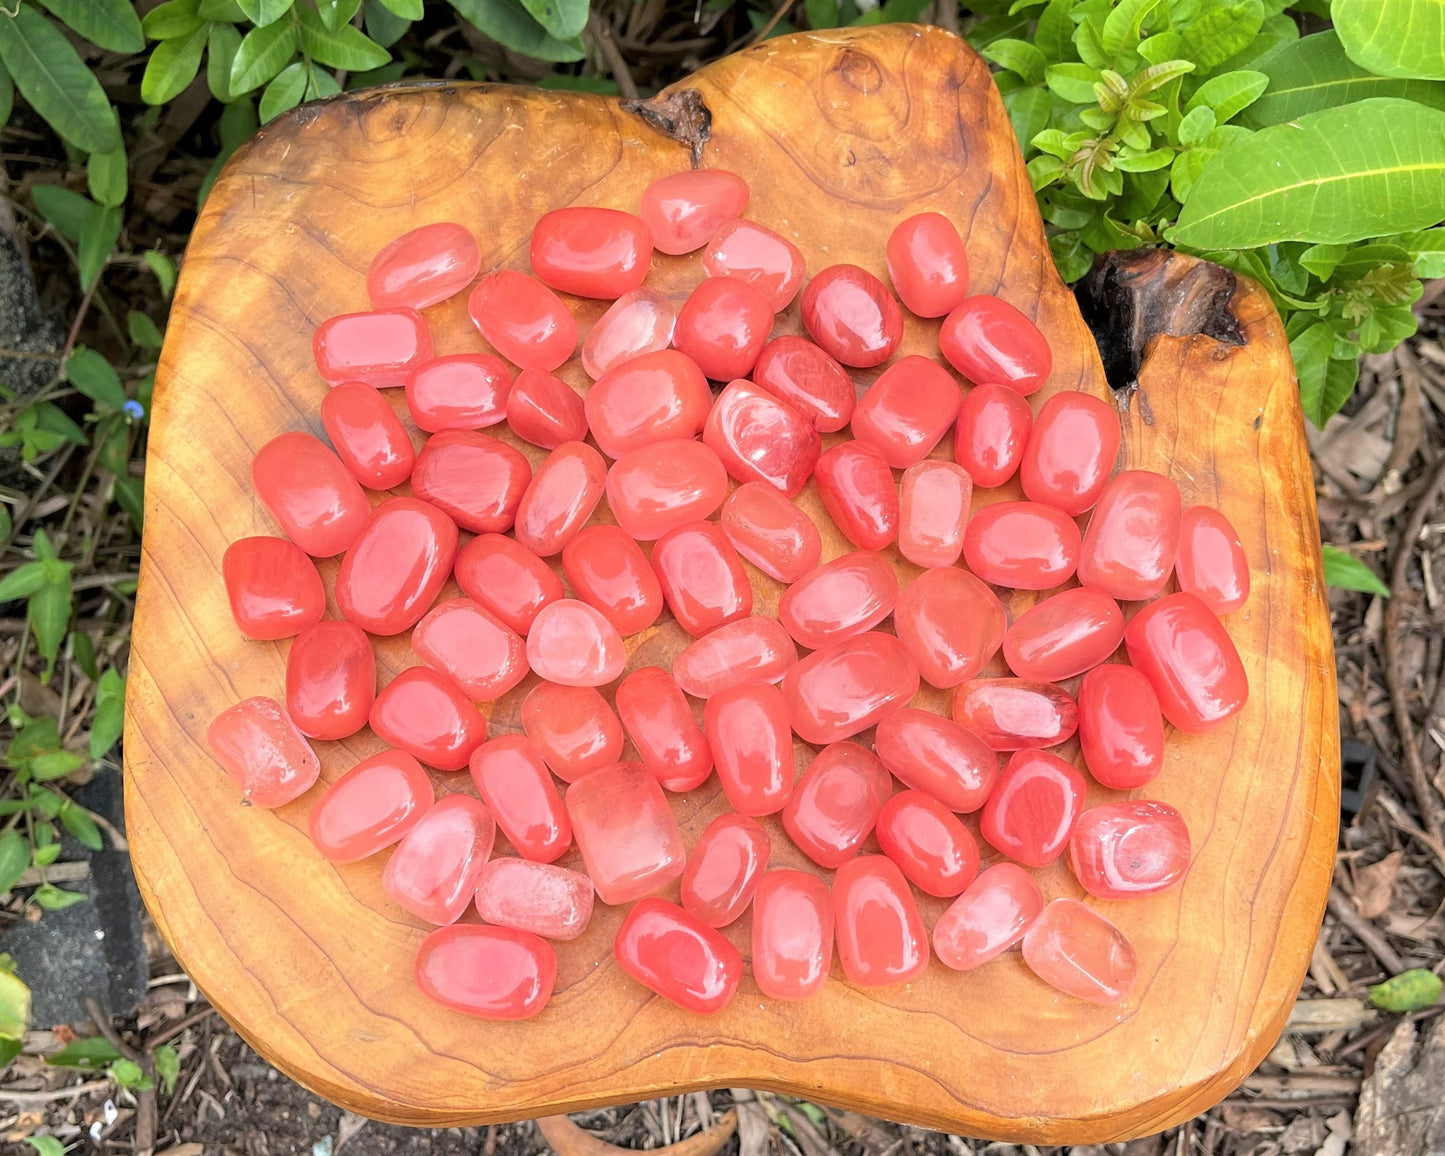 Cherry Quartz Tumbled Stones